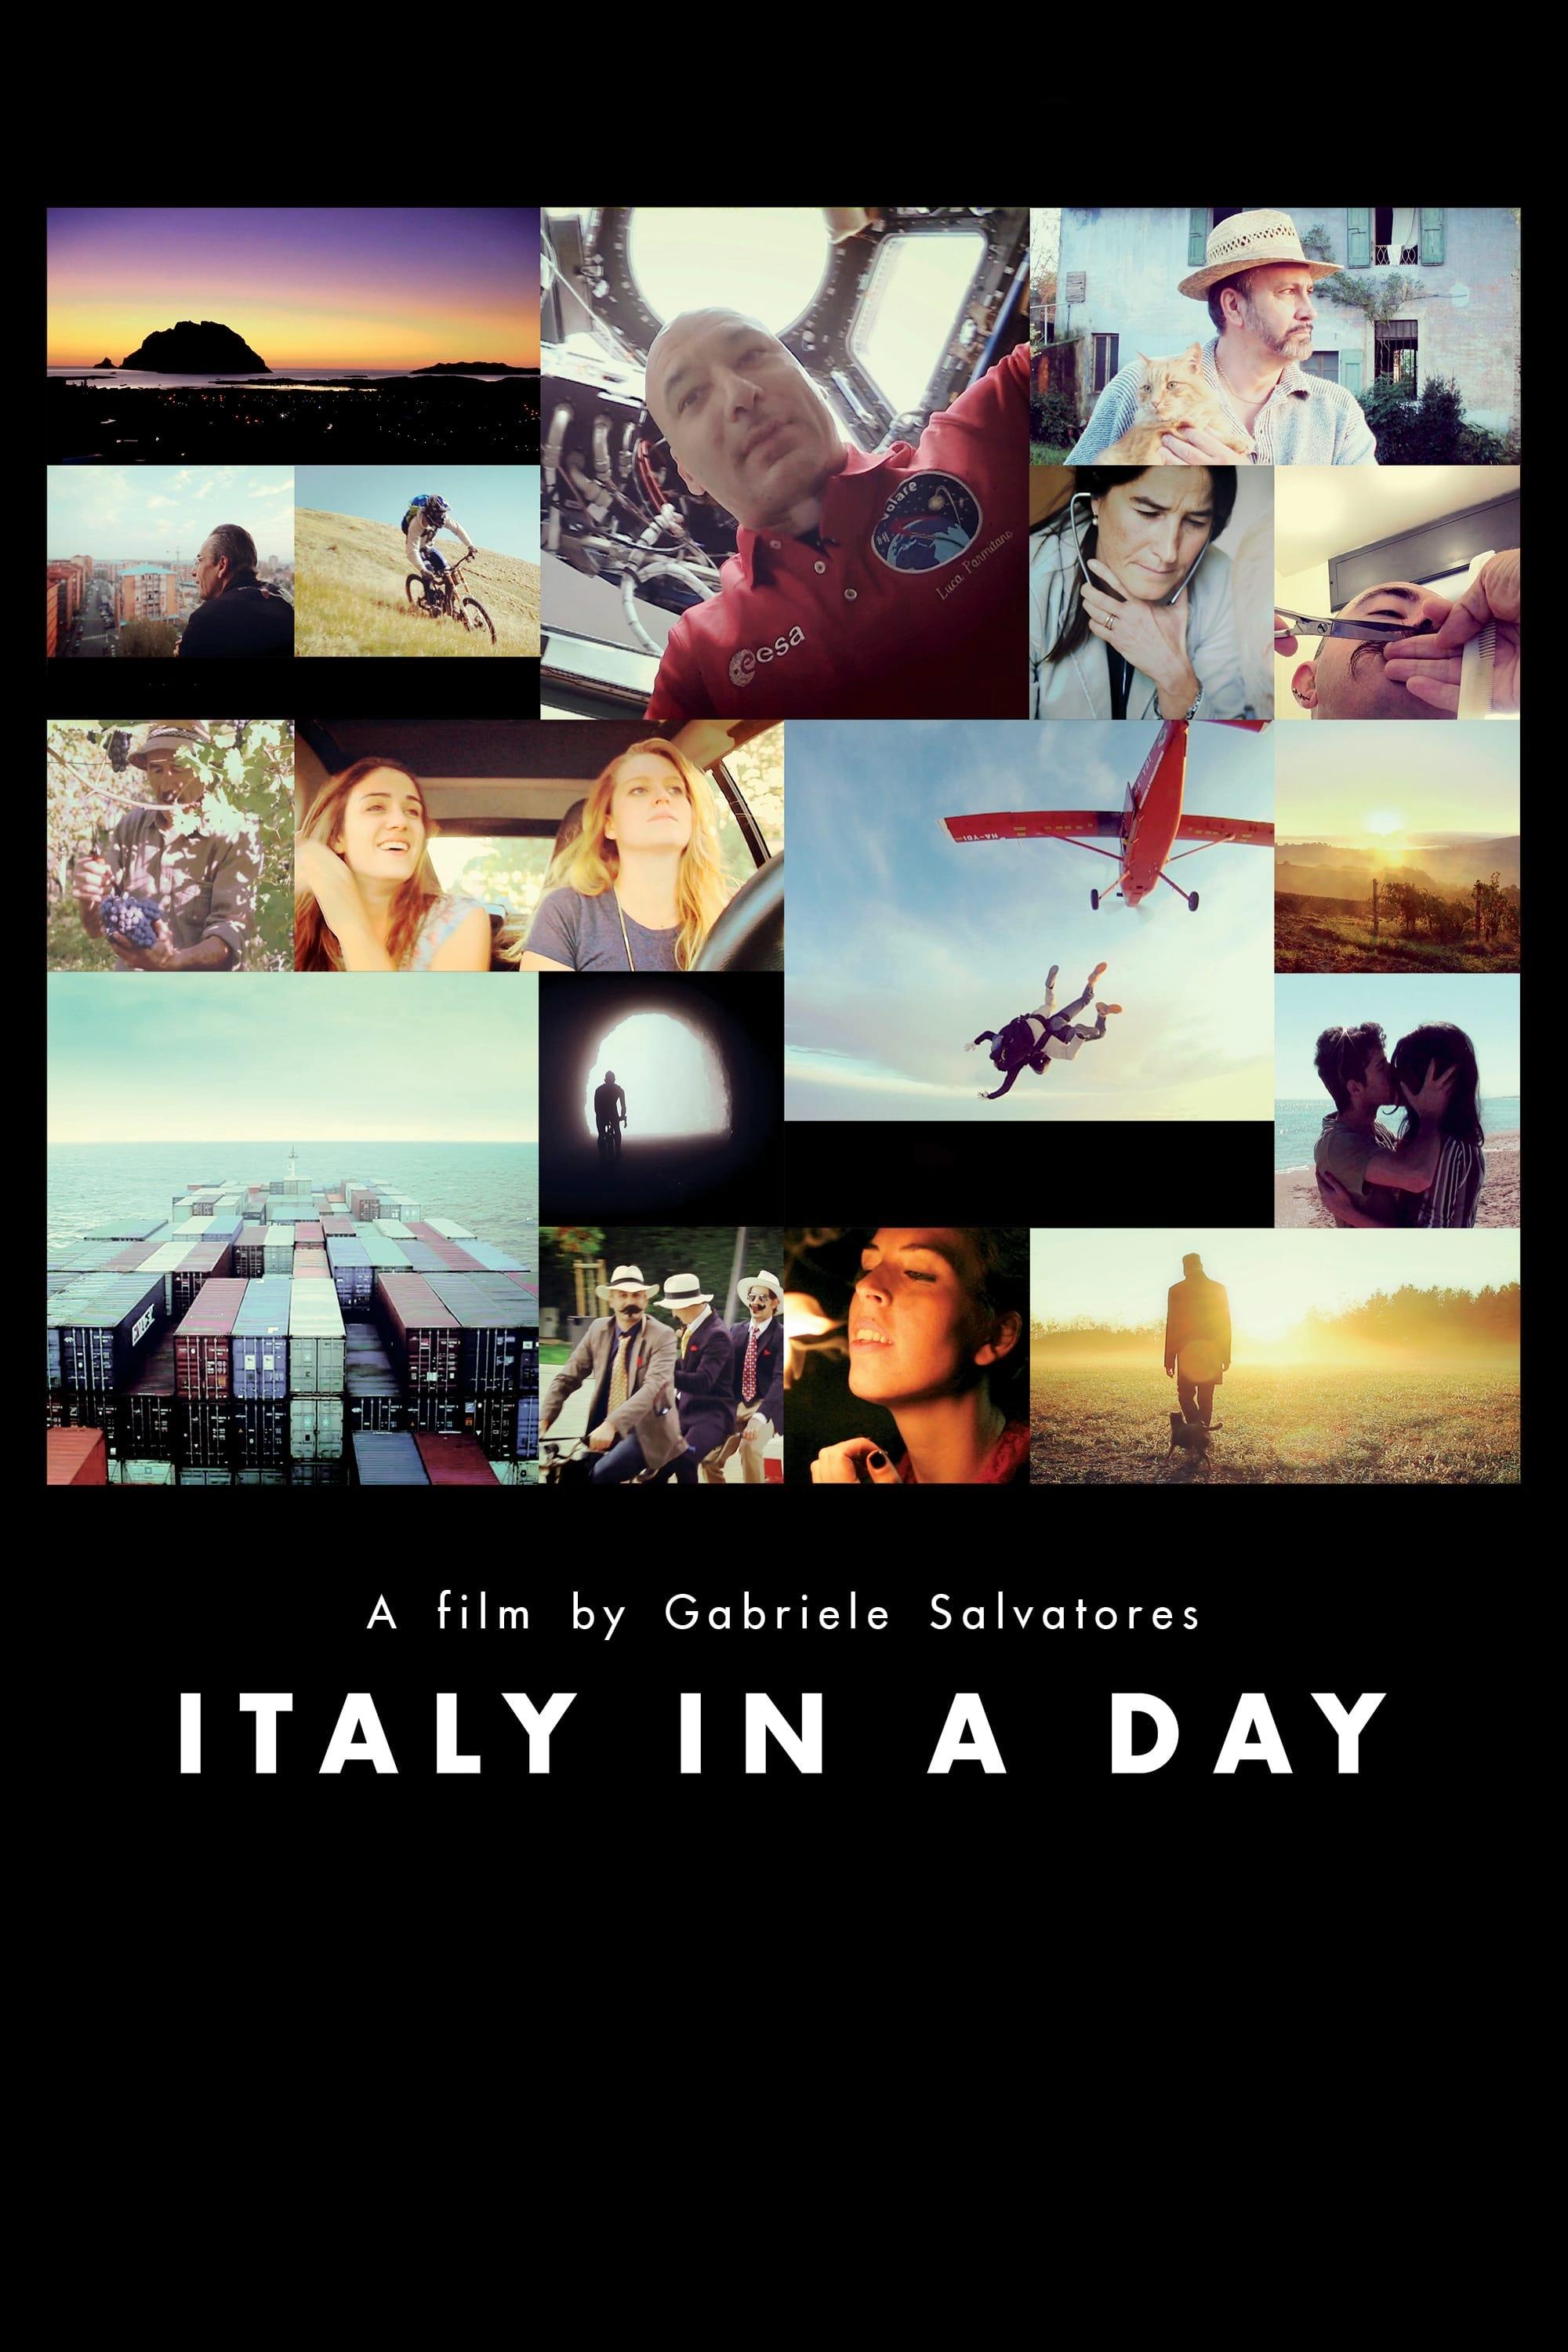 Italy in a Day - Un giorno da italiani poster